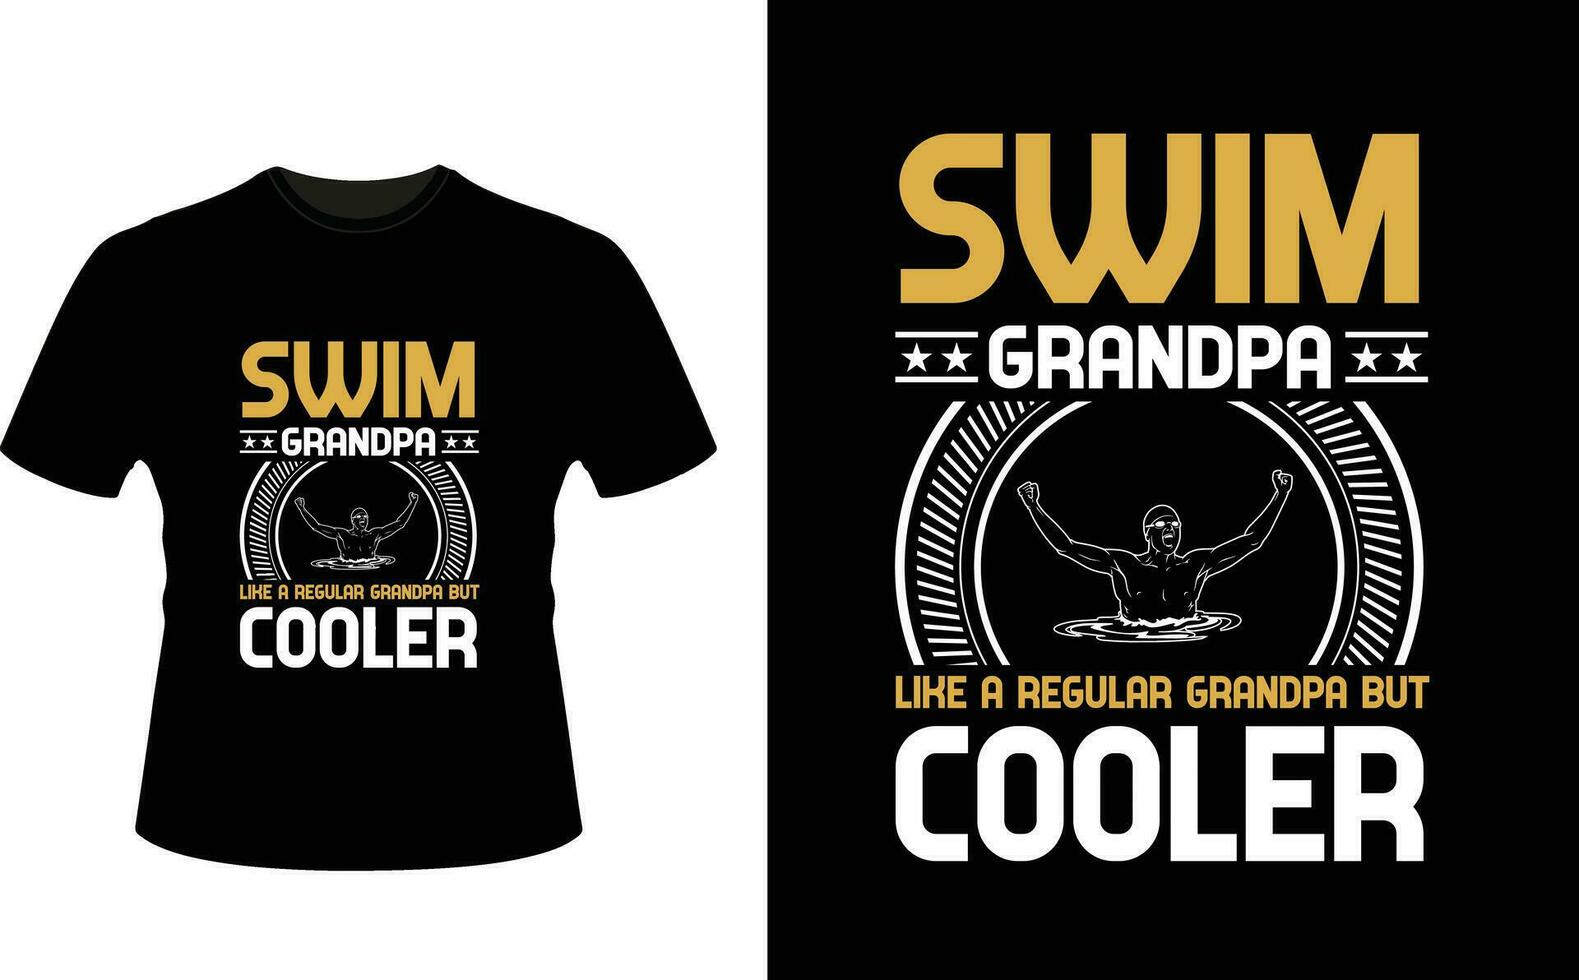 nuotare Nonno piace un' regolare Nonno ma più fresco o nonno maglietta design o nonno giorno t camicia design vettore